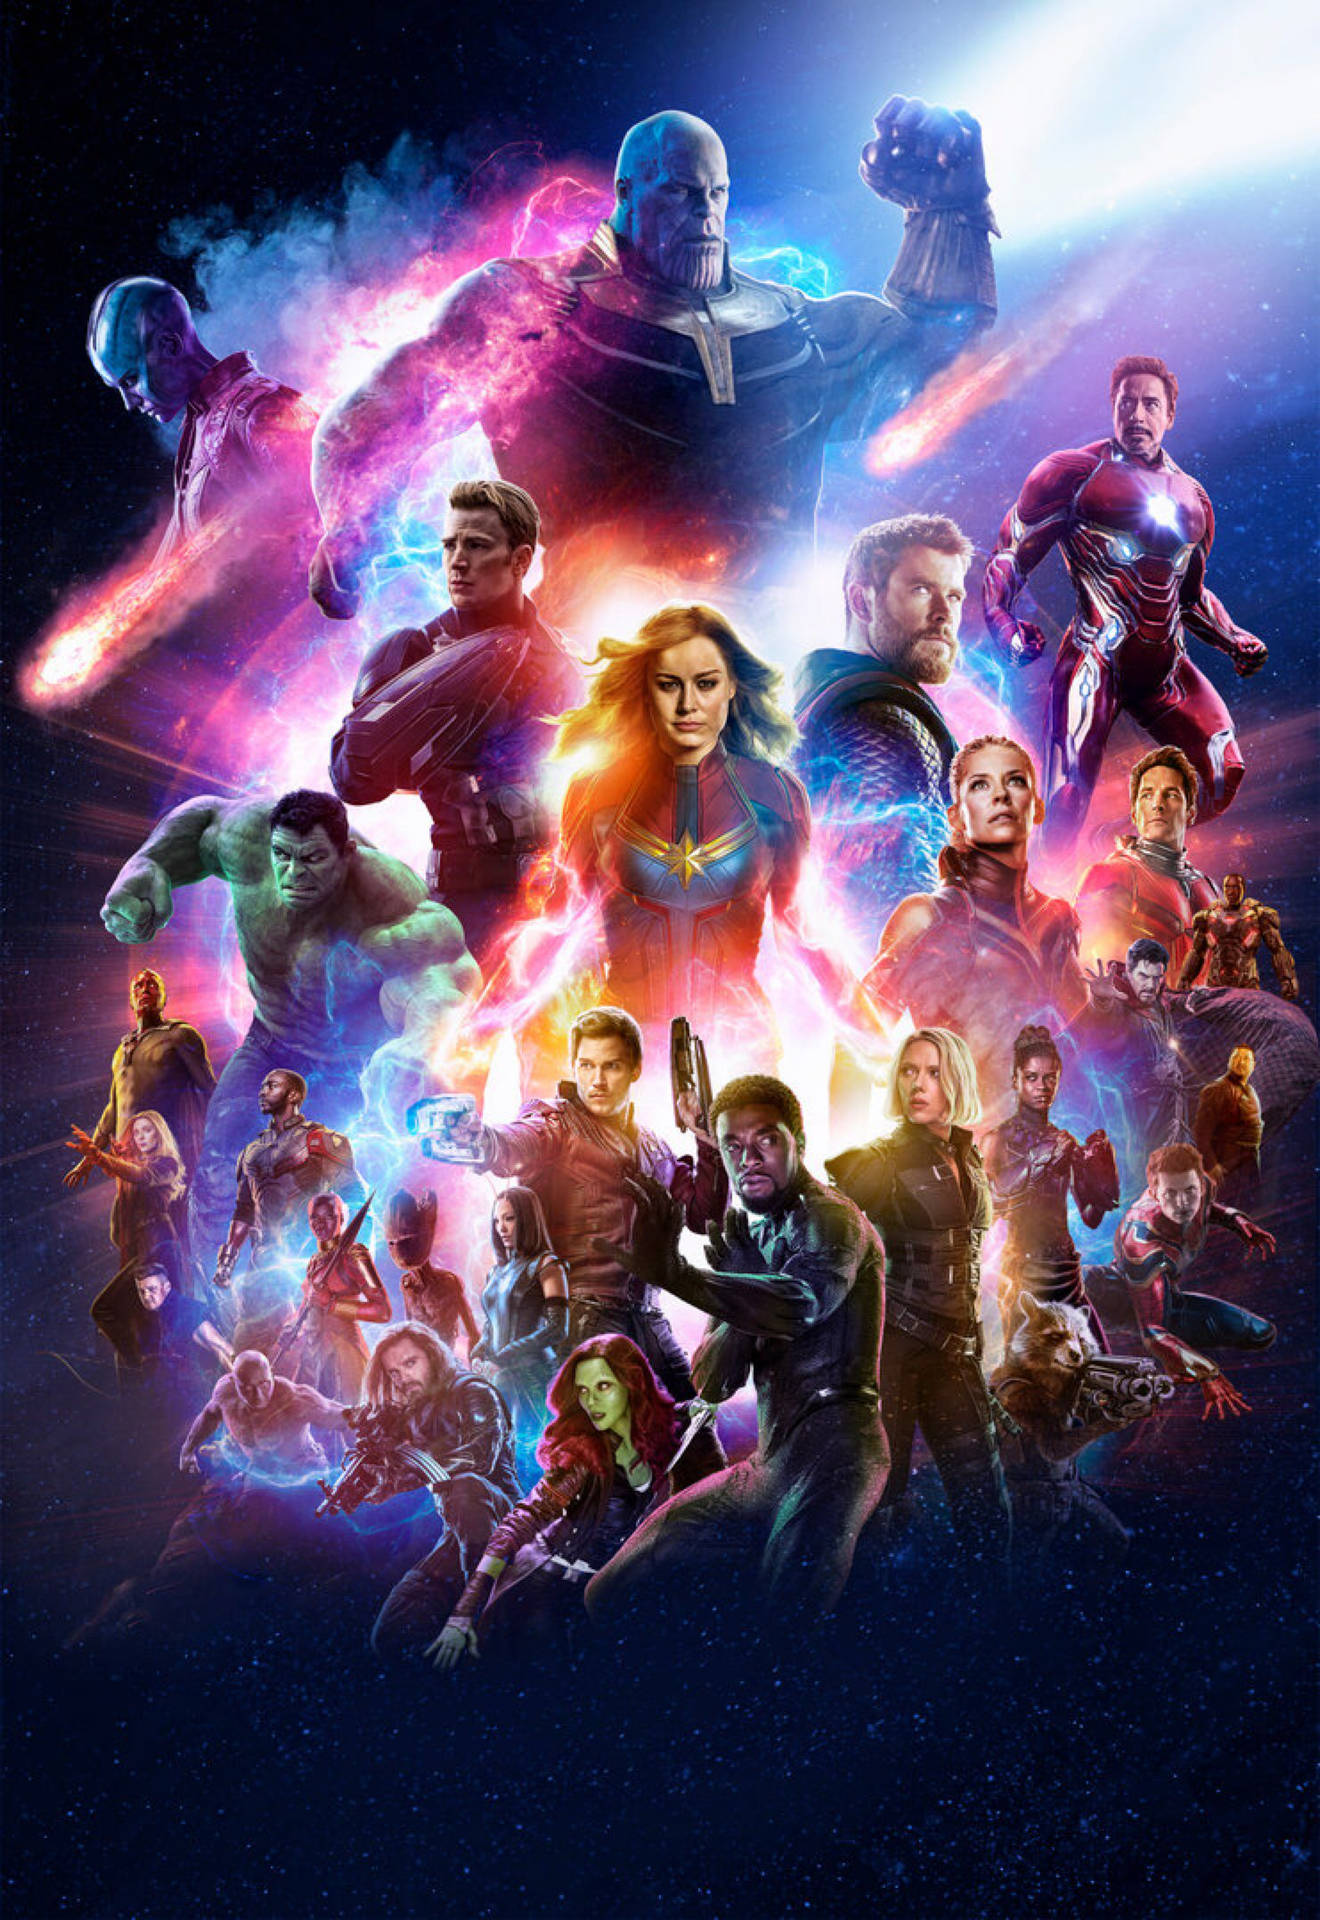 The Original 6 Avengers Together Again in 'Avengers: Endgame' Wallpaper